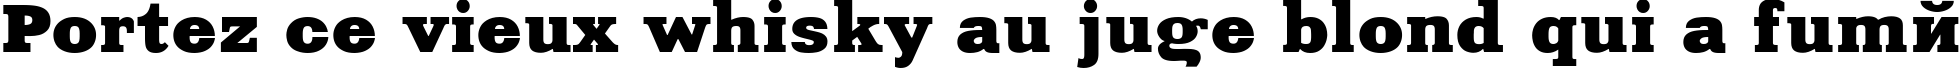 Пример написания шрифтом Aardvark Normal текста на французском